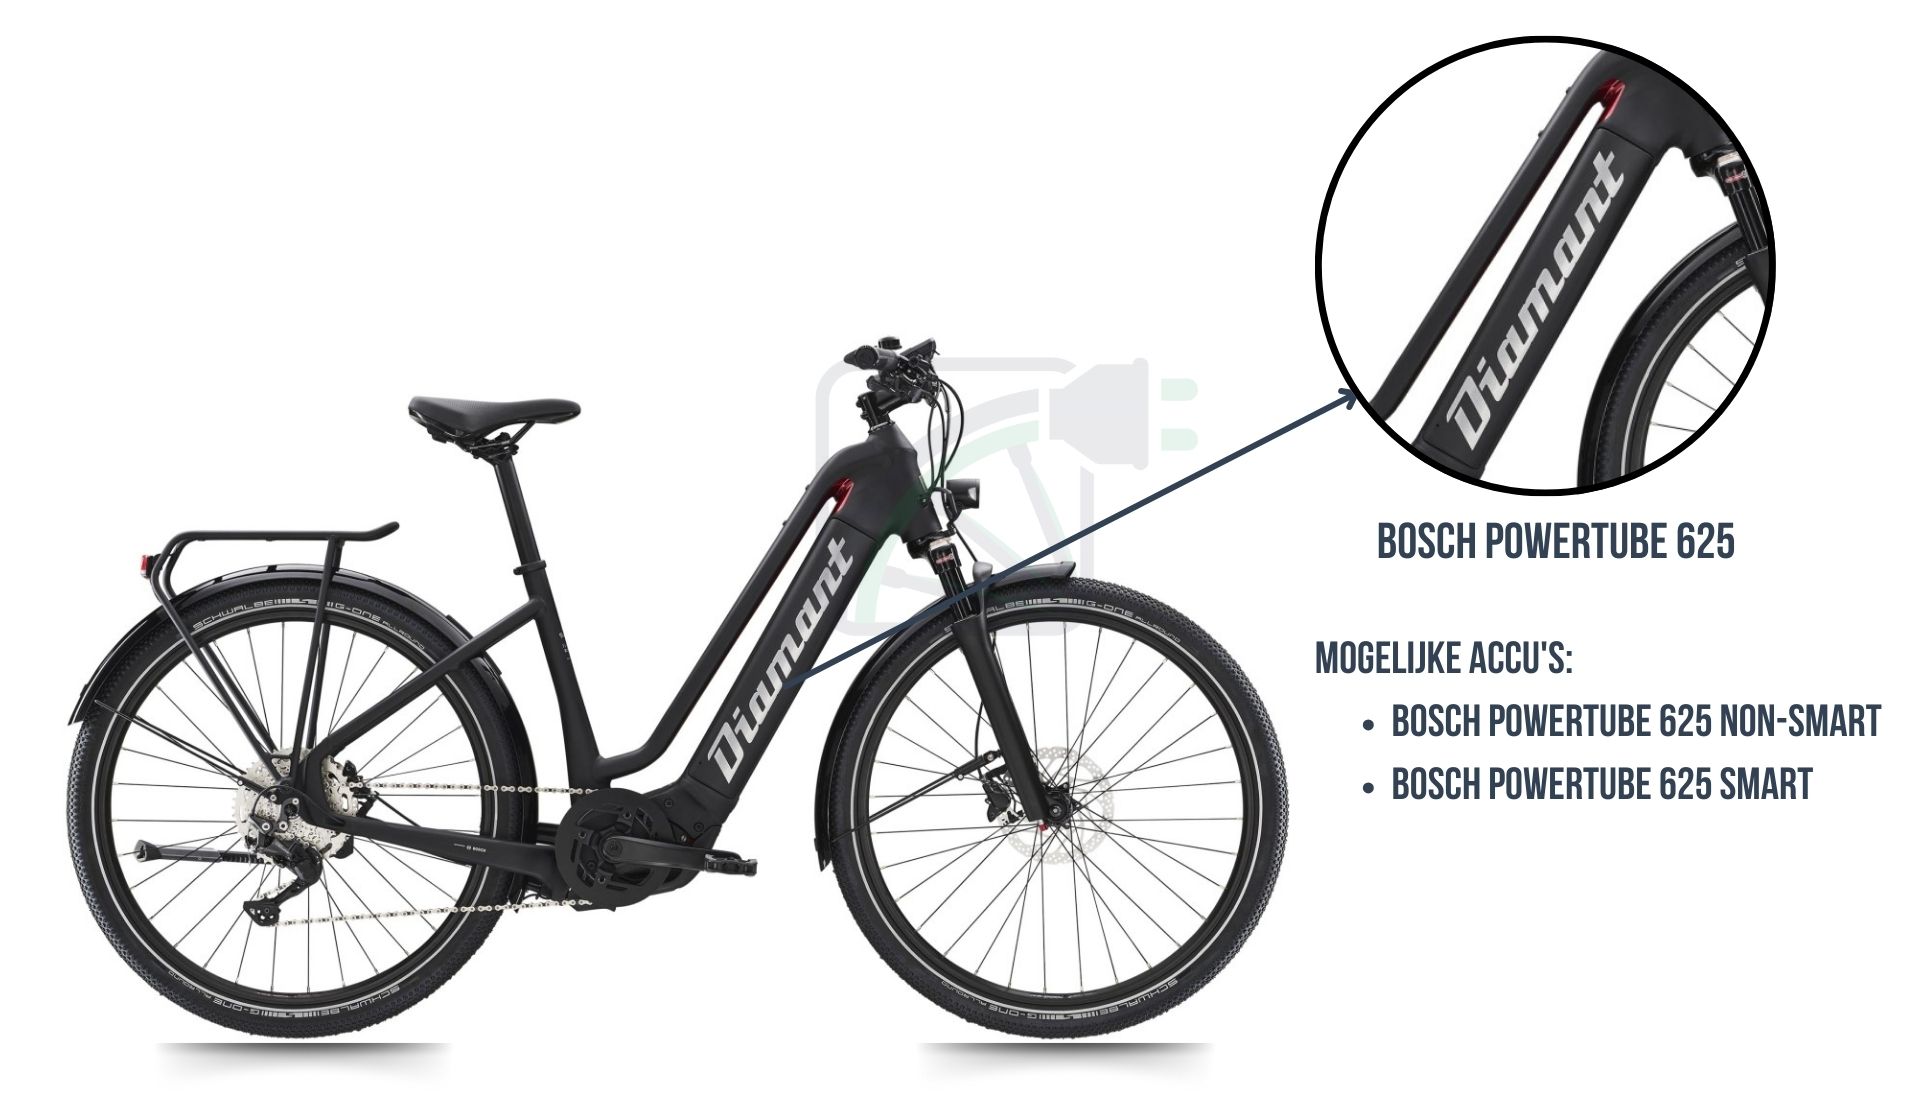 Le vélo électrique Diamant Zouma avec mise en évidence de la batterie de vélo correspondante. Il s'agit en effet du Bosch Powertube 625 SMART ou du Bosch Powertube 625 non-SMART.